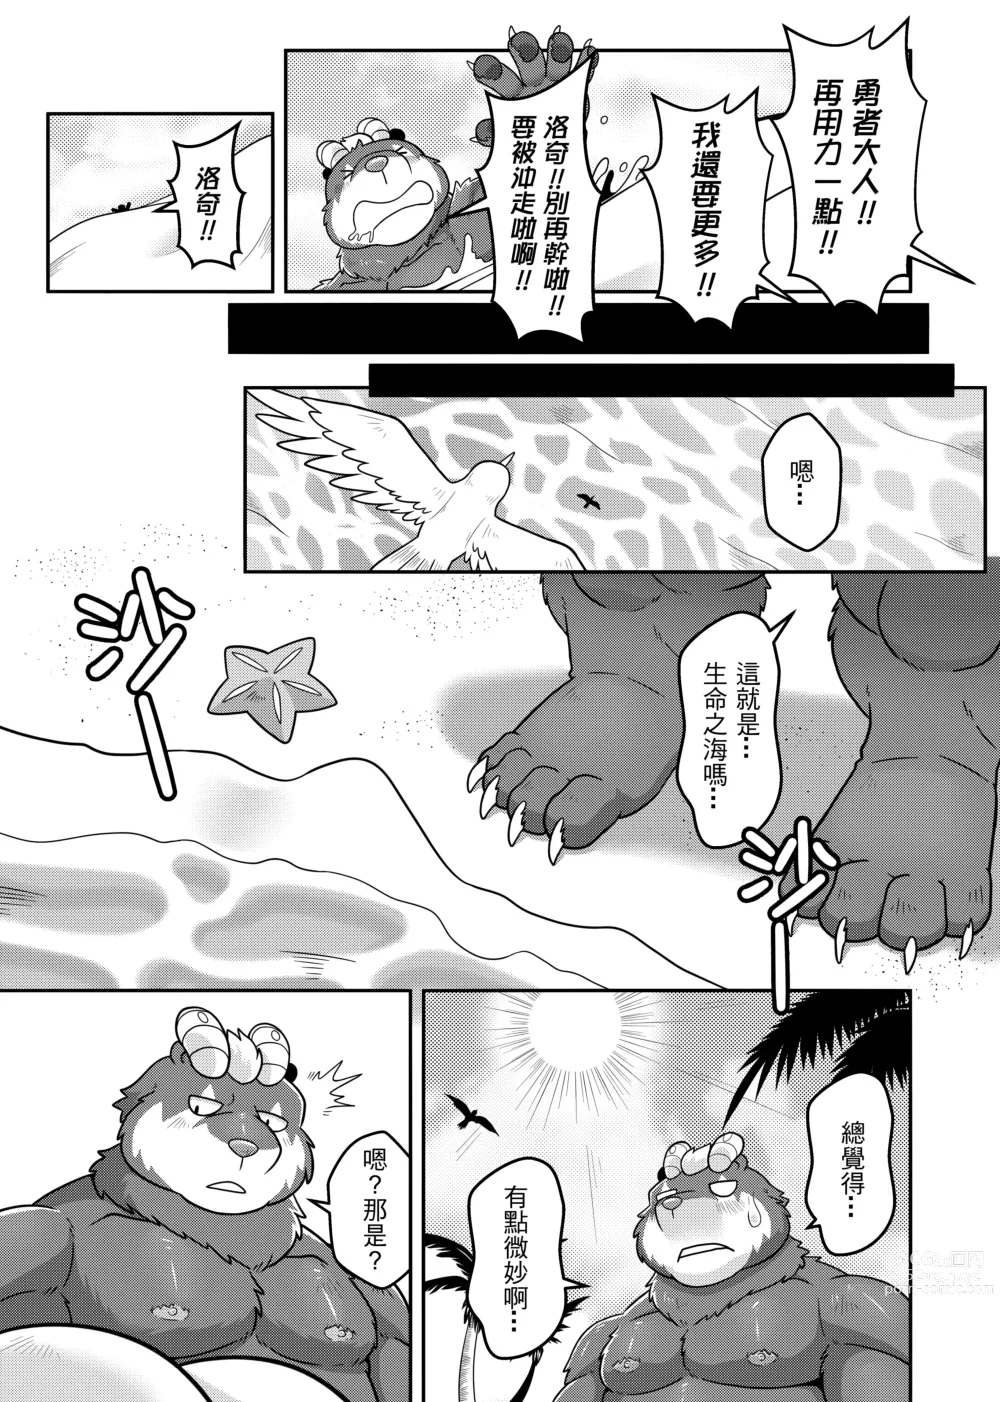 Page 39 of doujinshi 勇者的大小只有魔王塞得下3